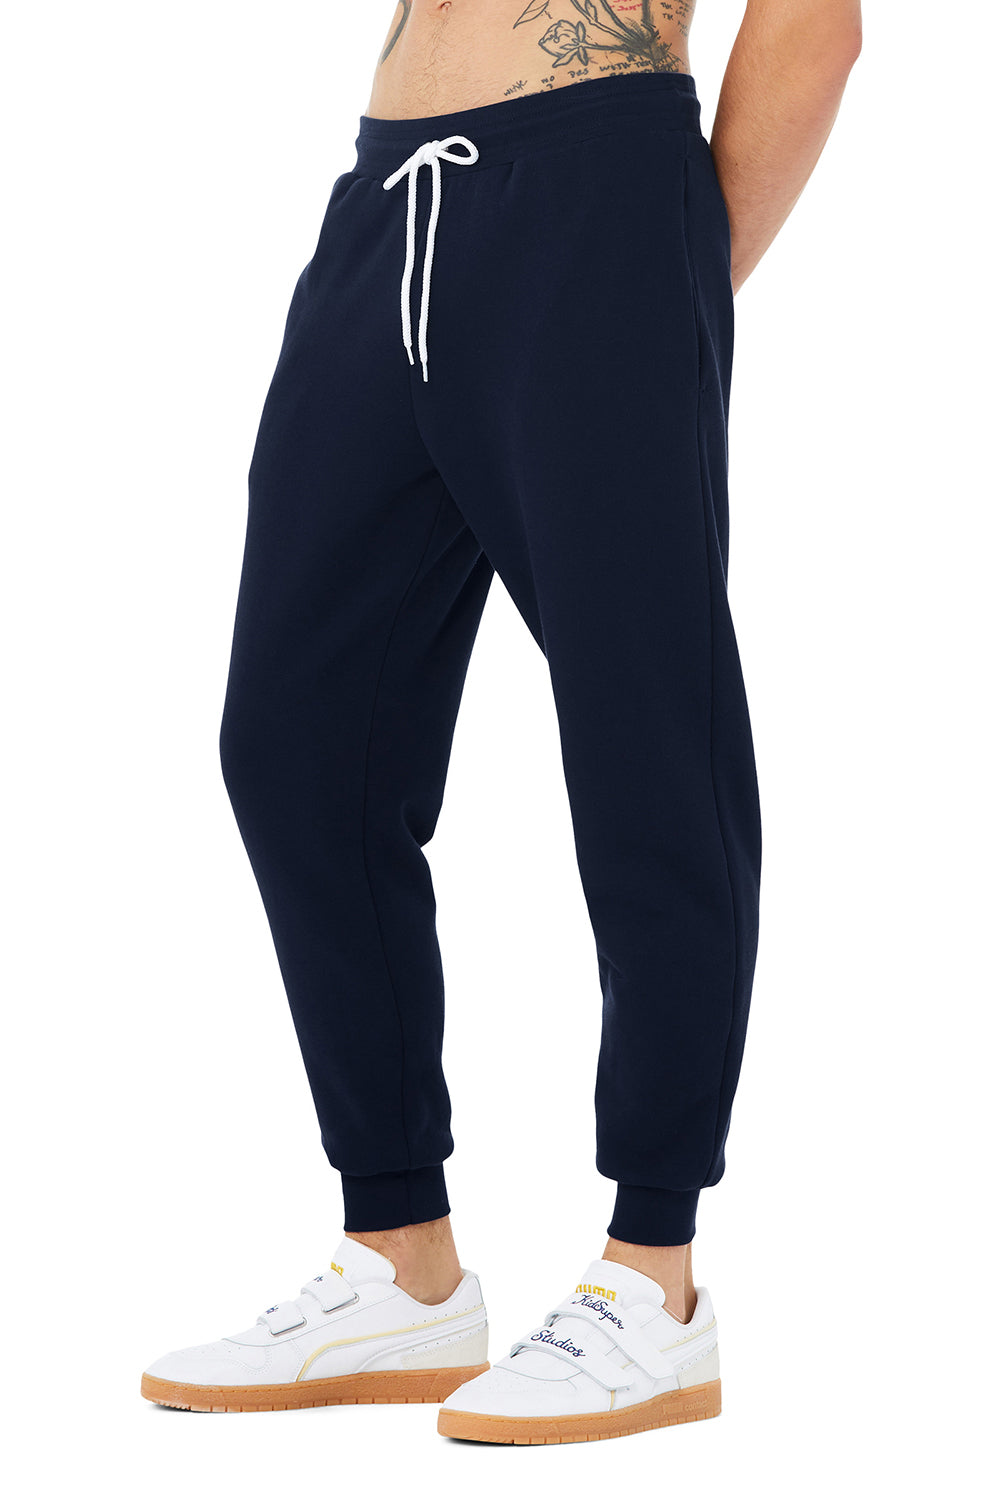 Bella + Canvas BC3727 Mens Jogger Sweatpants w/ Pockets Navy Blue Model 3Q